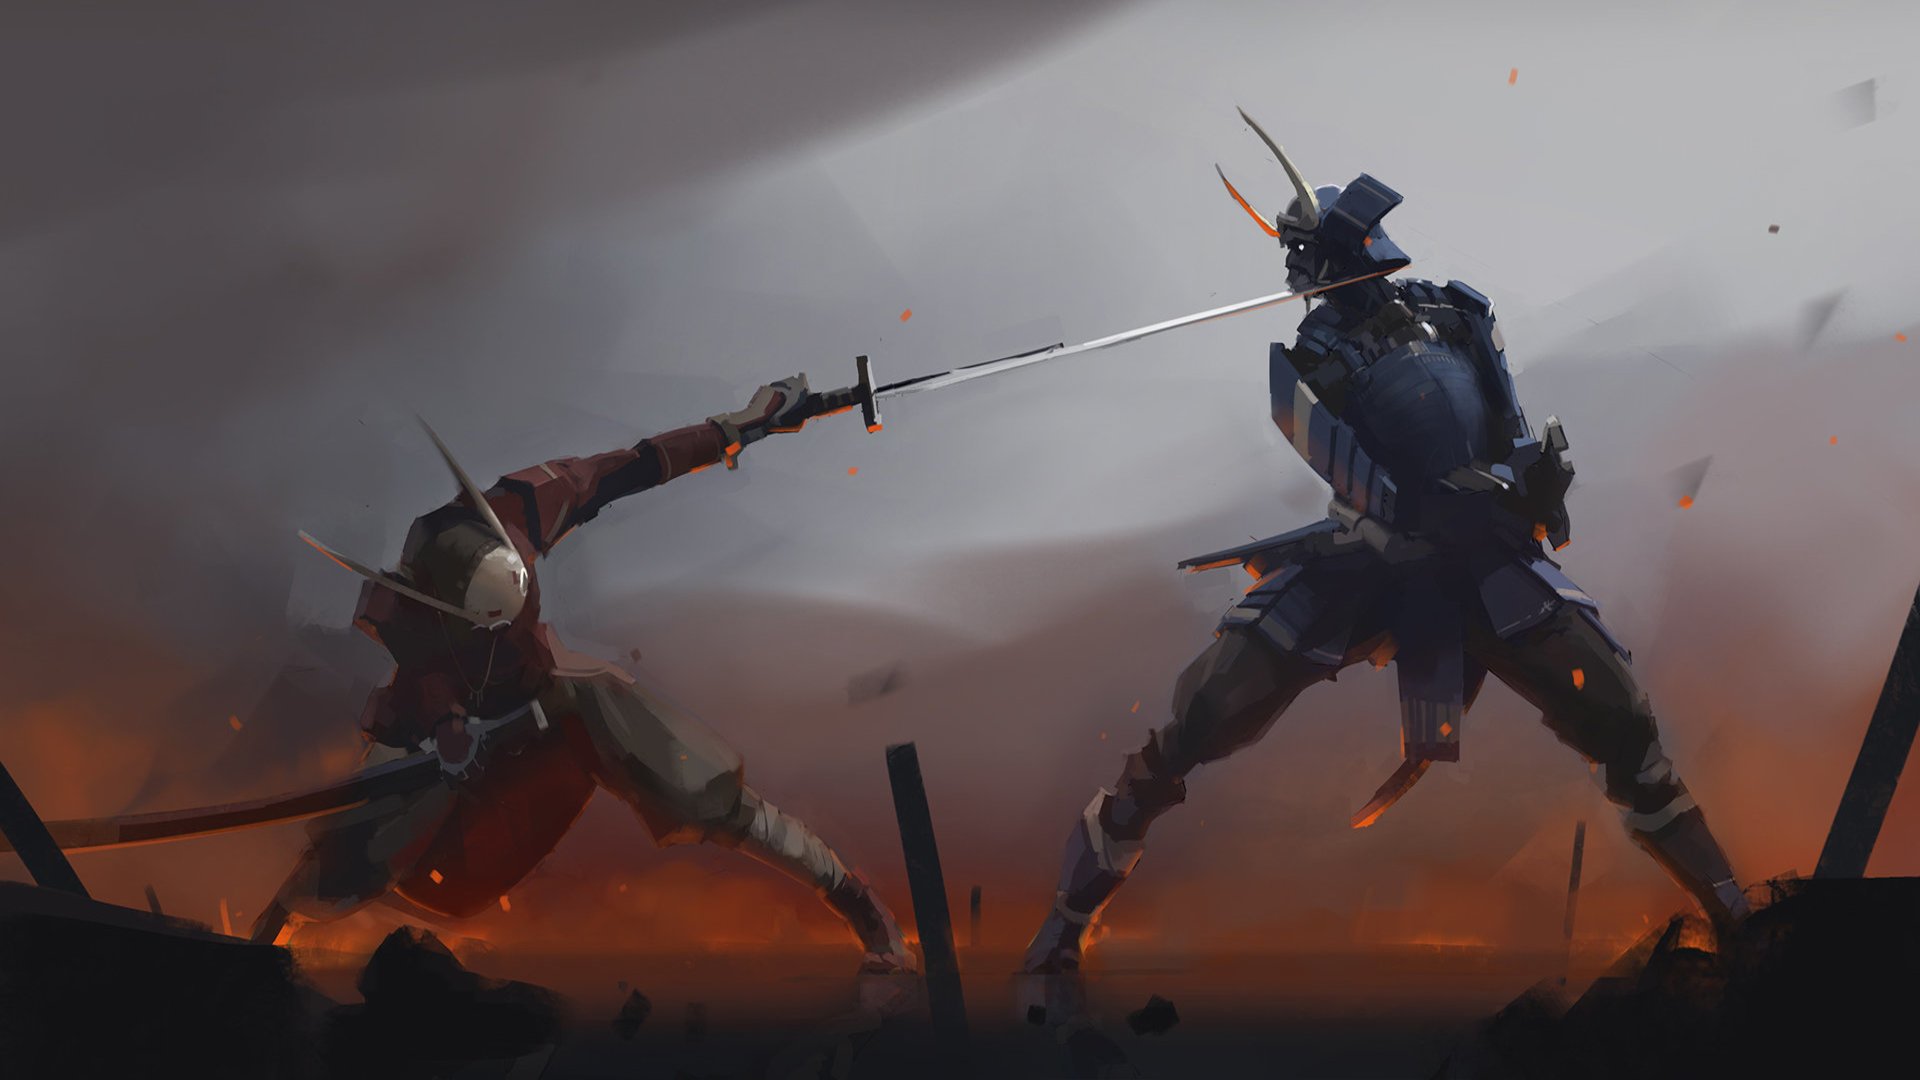 Samurai Battle Wallpapers